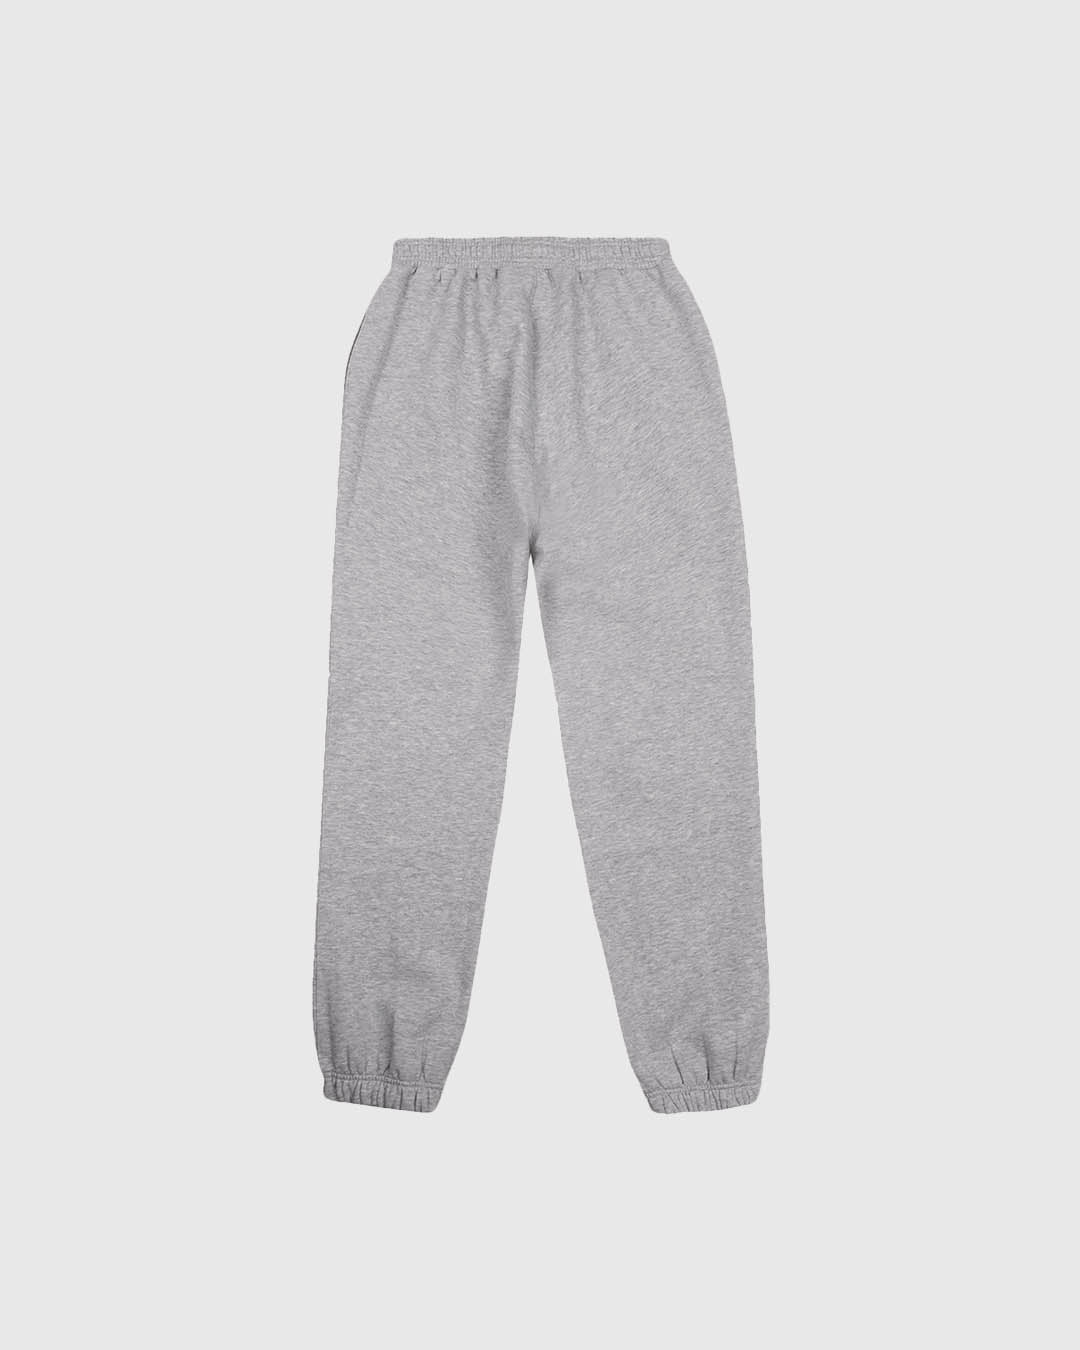 PFC: 003-3 - Men's Sweatpants - Grey Marl